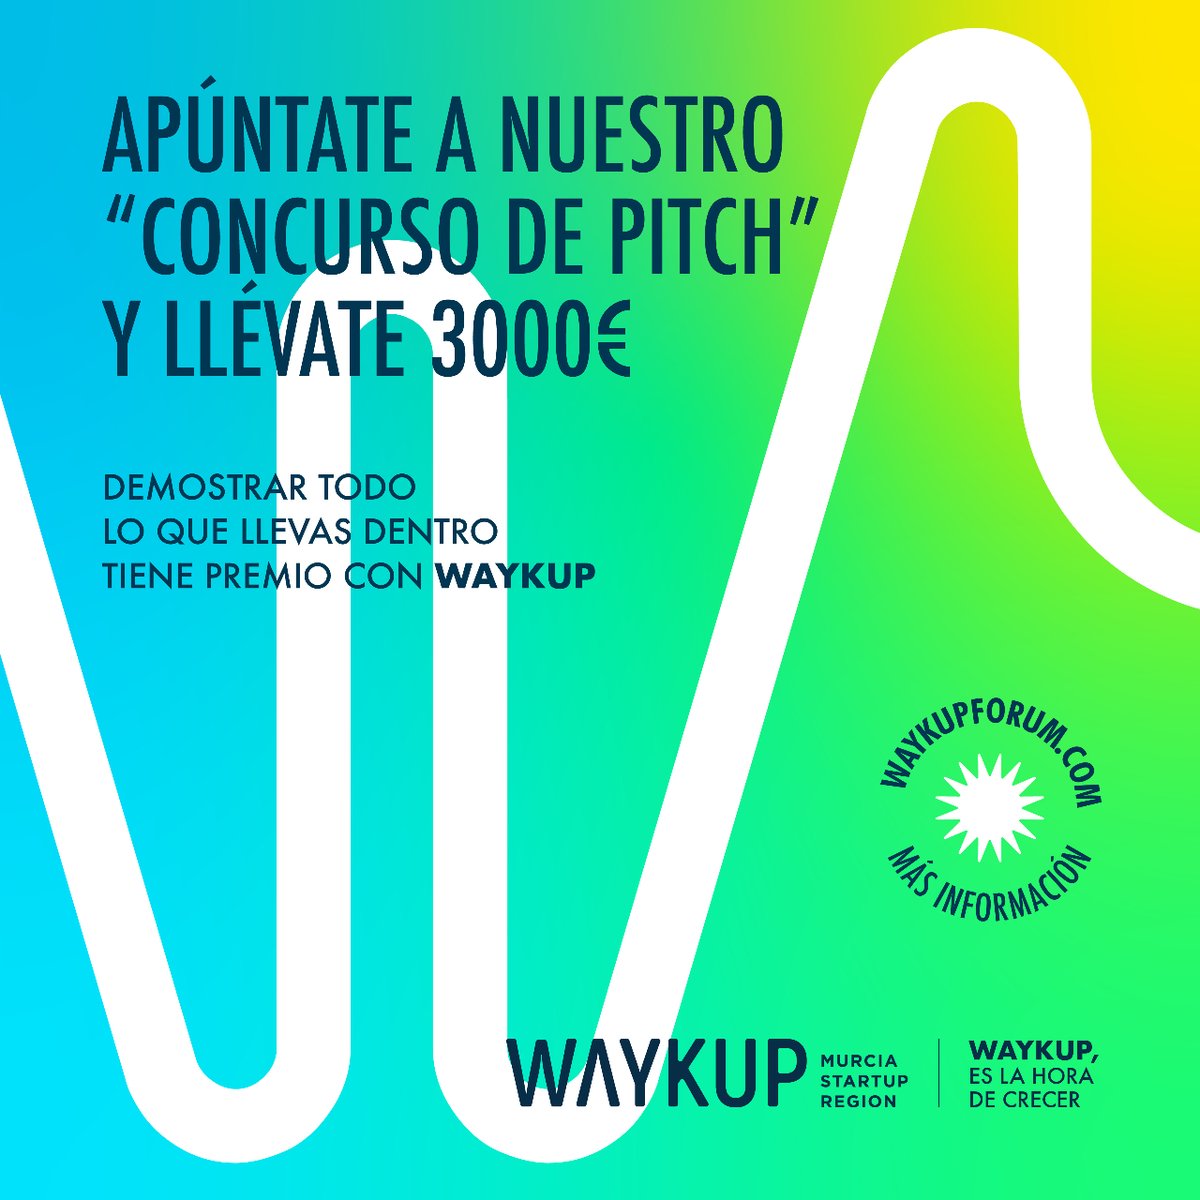 🔊 ¿Vienes con tu startup a #WAYKUP? ¡No puedes perderte el concurso de pitch! 🗣️💬 Date a conocer entre los inversores y llévate 3.000 euros de premio. 🏆 ¡AQUÍ TODOS GANAN! 🤩 Más información👇 waykupforum.com